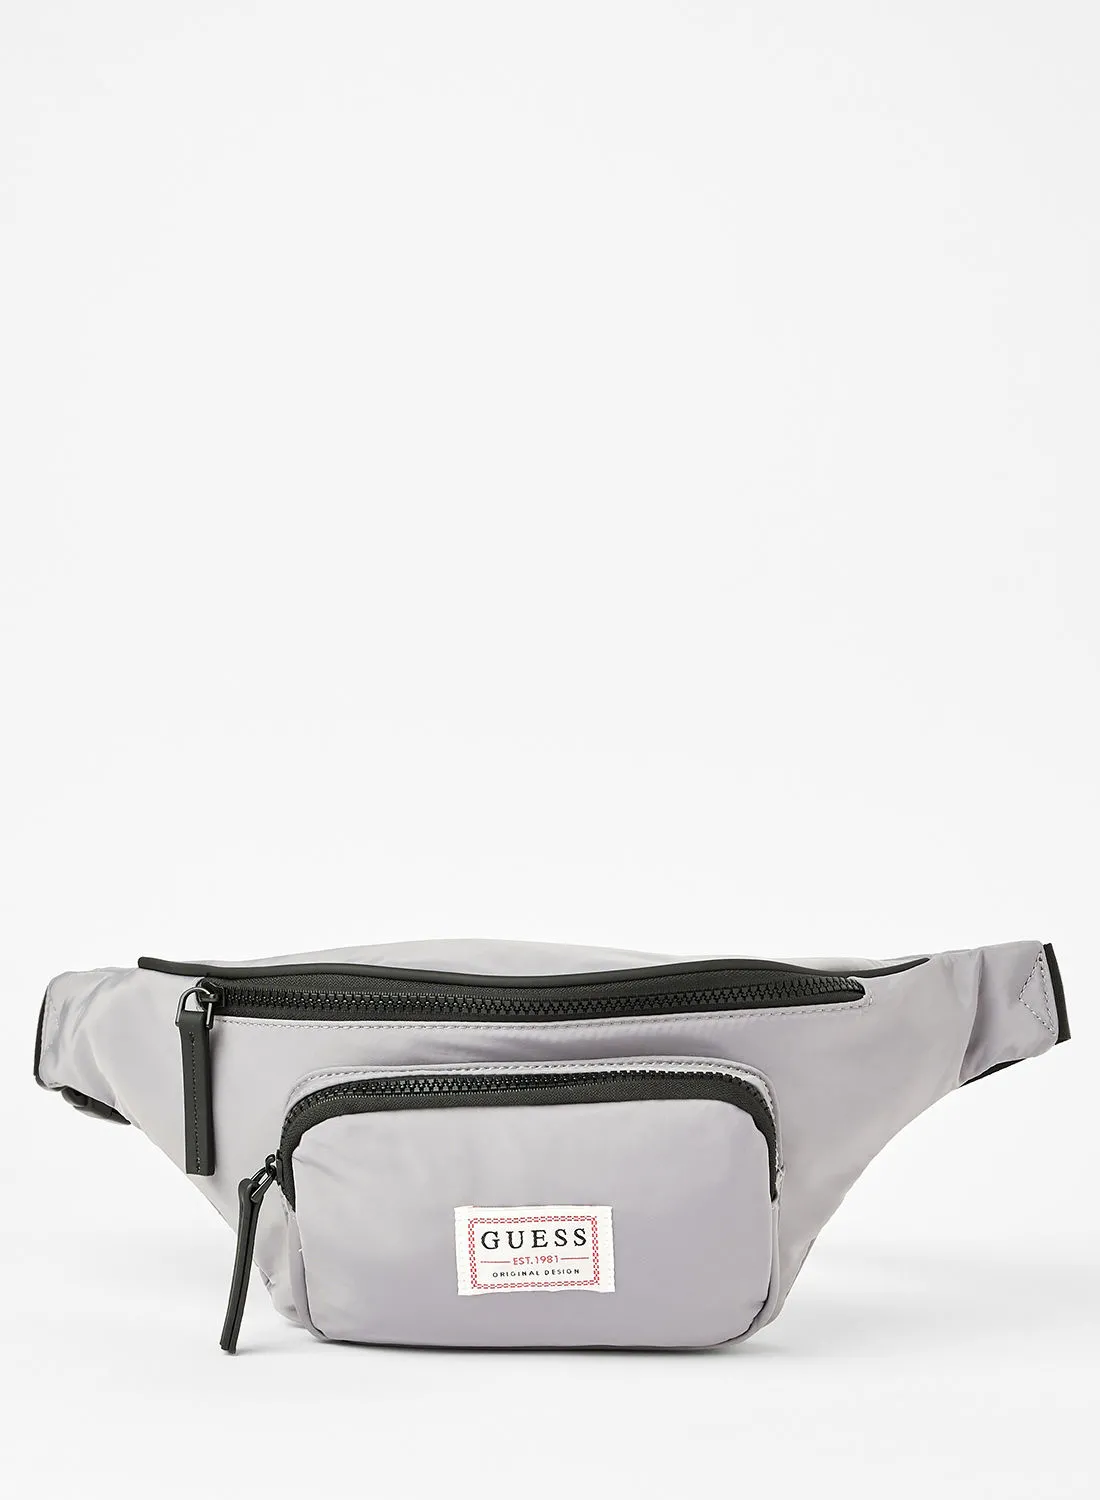 GUESS Logo Originals Bum Bag Grey